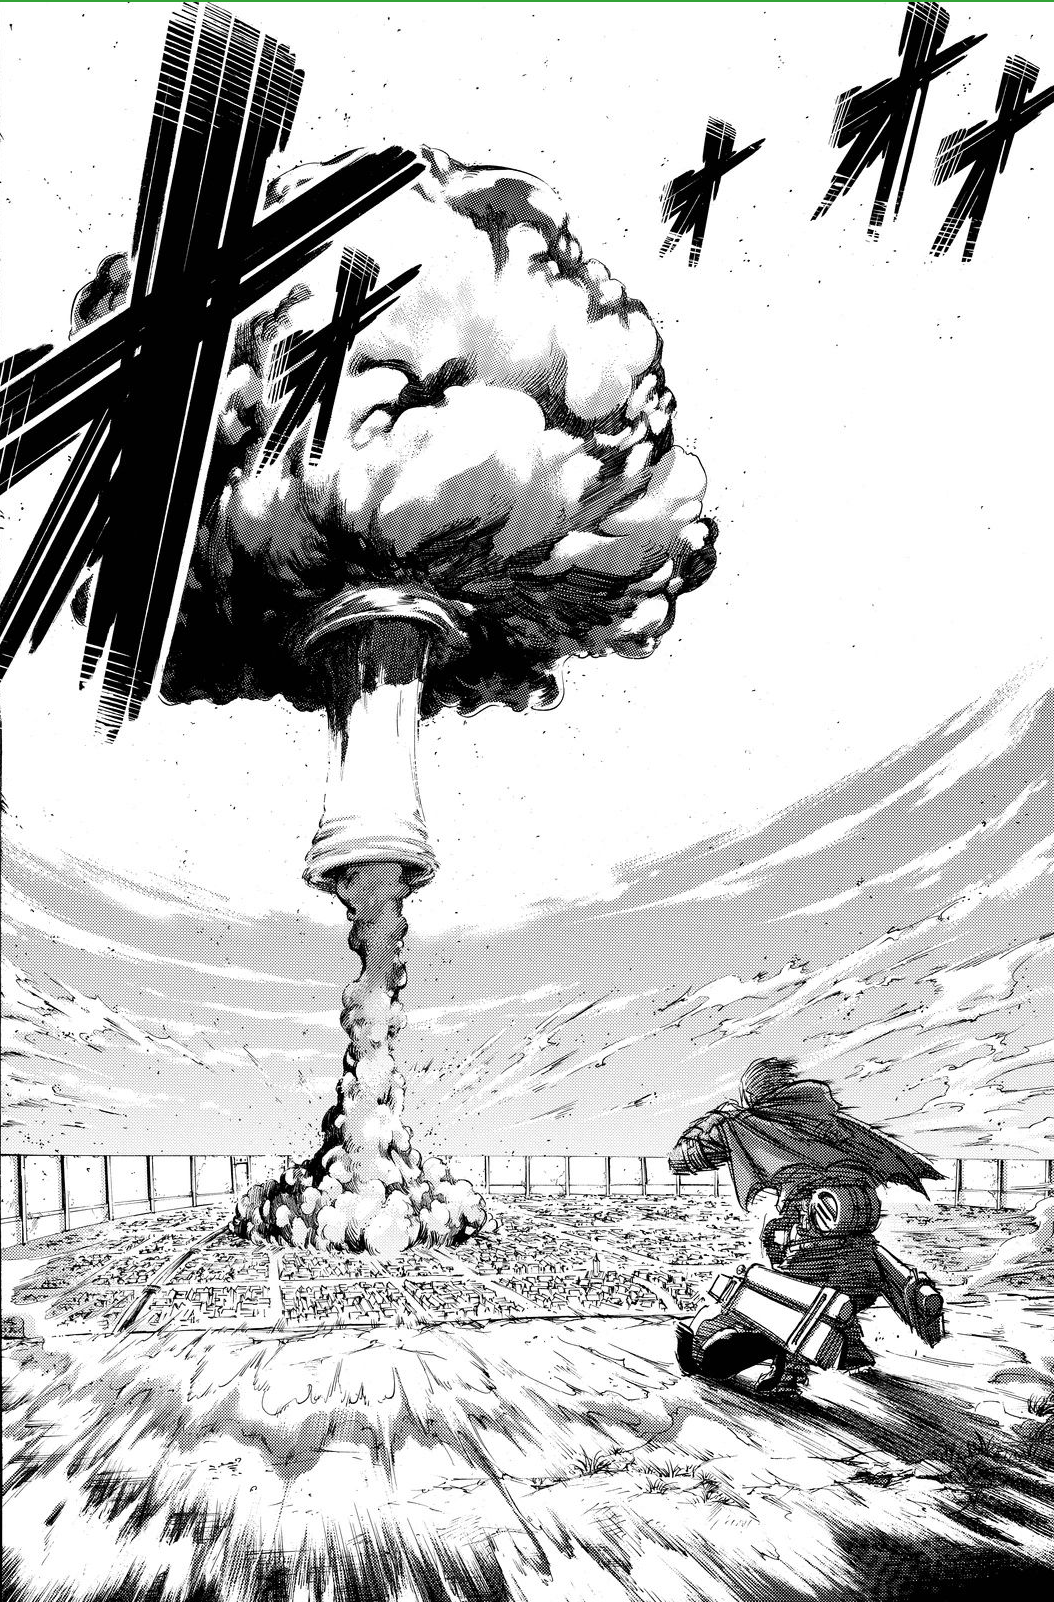 Shingeki no Kyojin: Final do capítulo 137 é explosivo